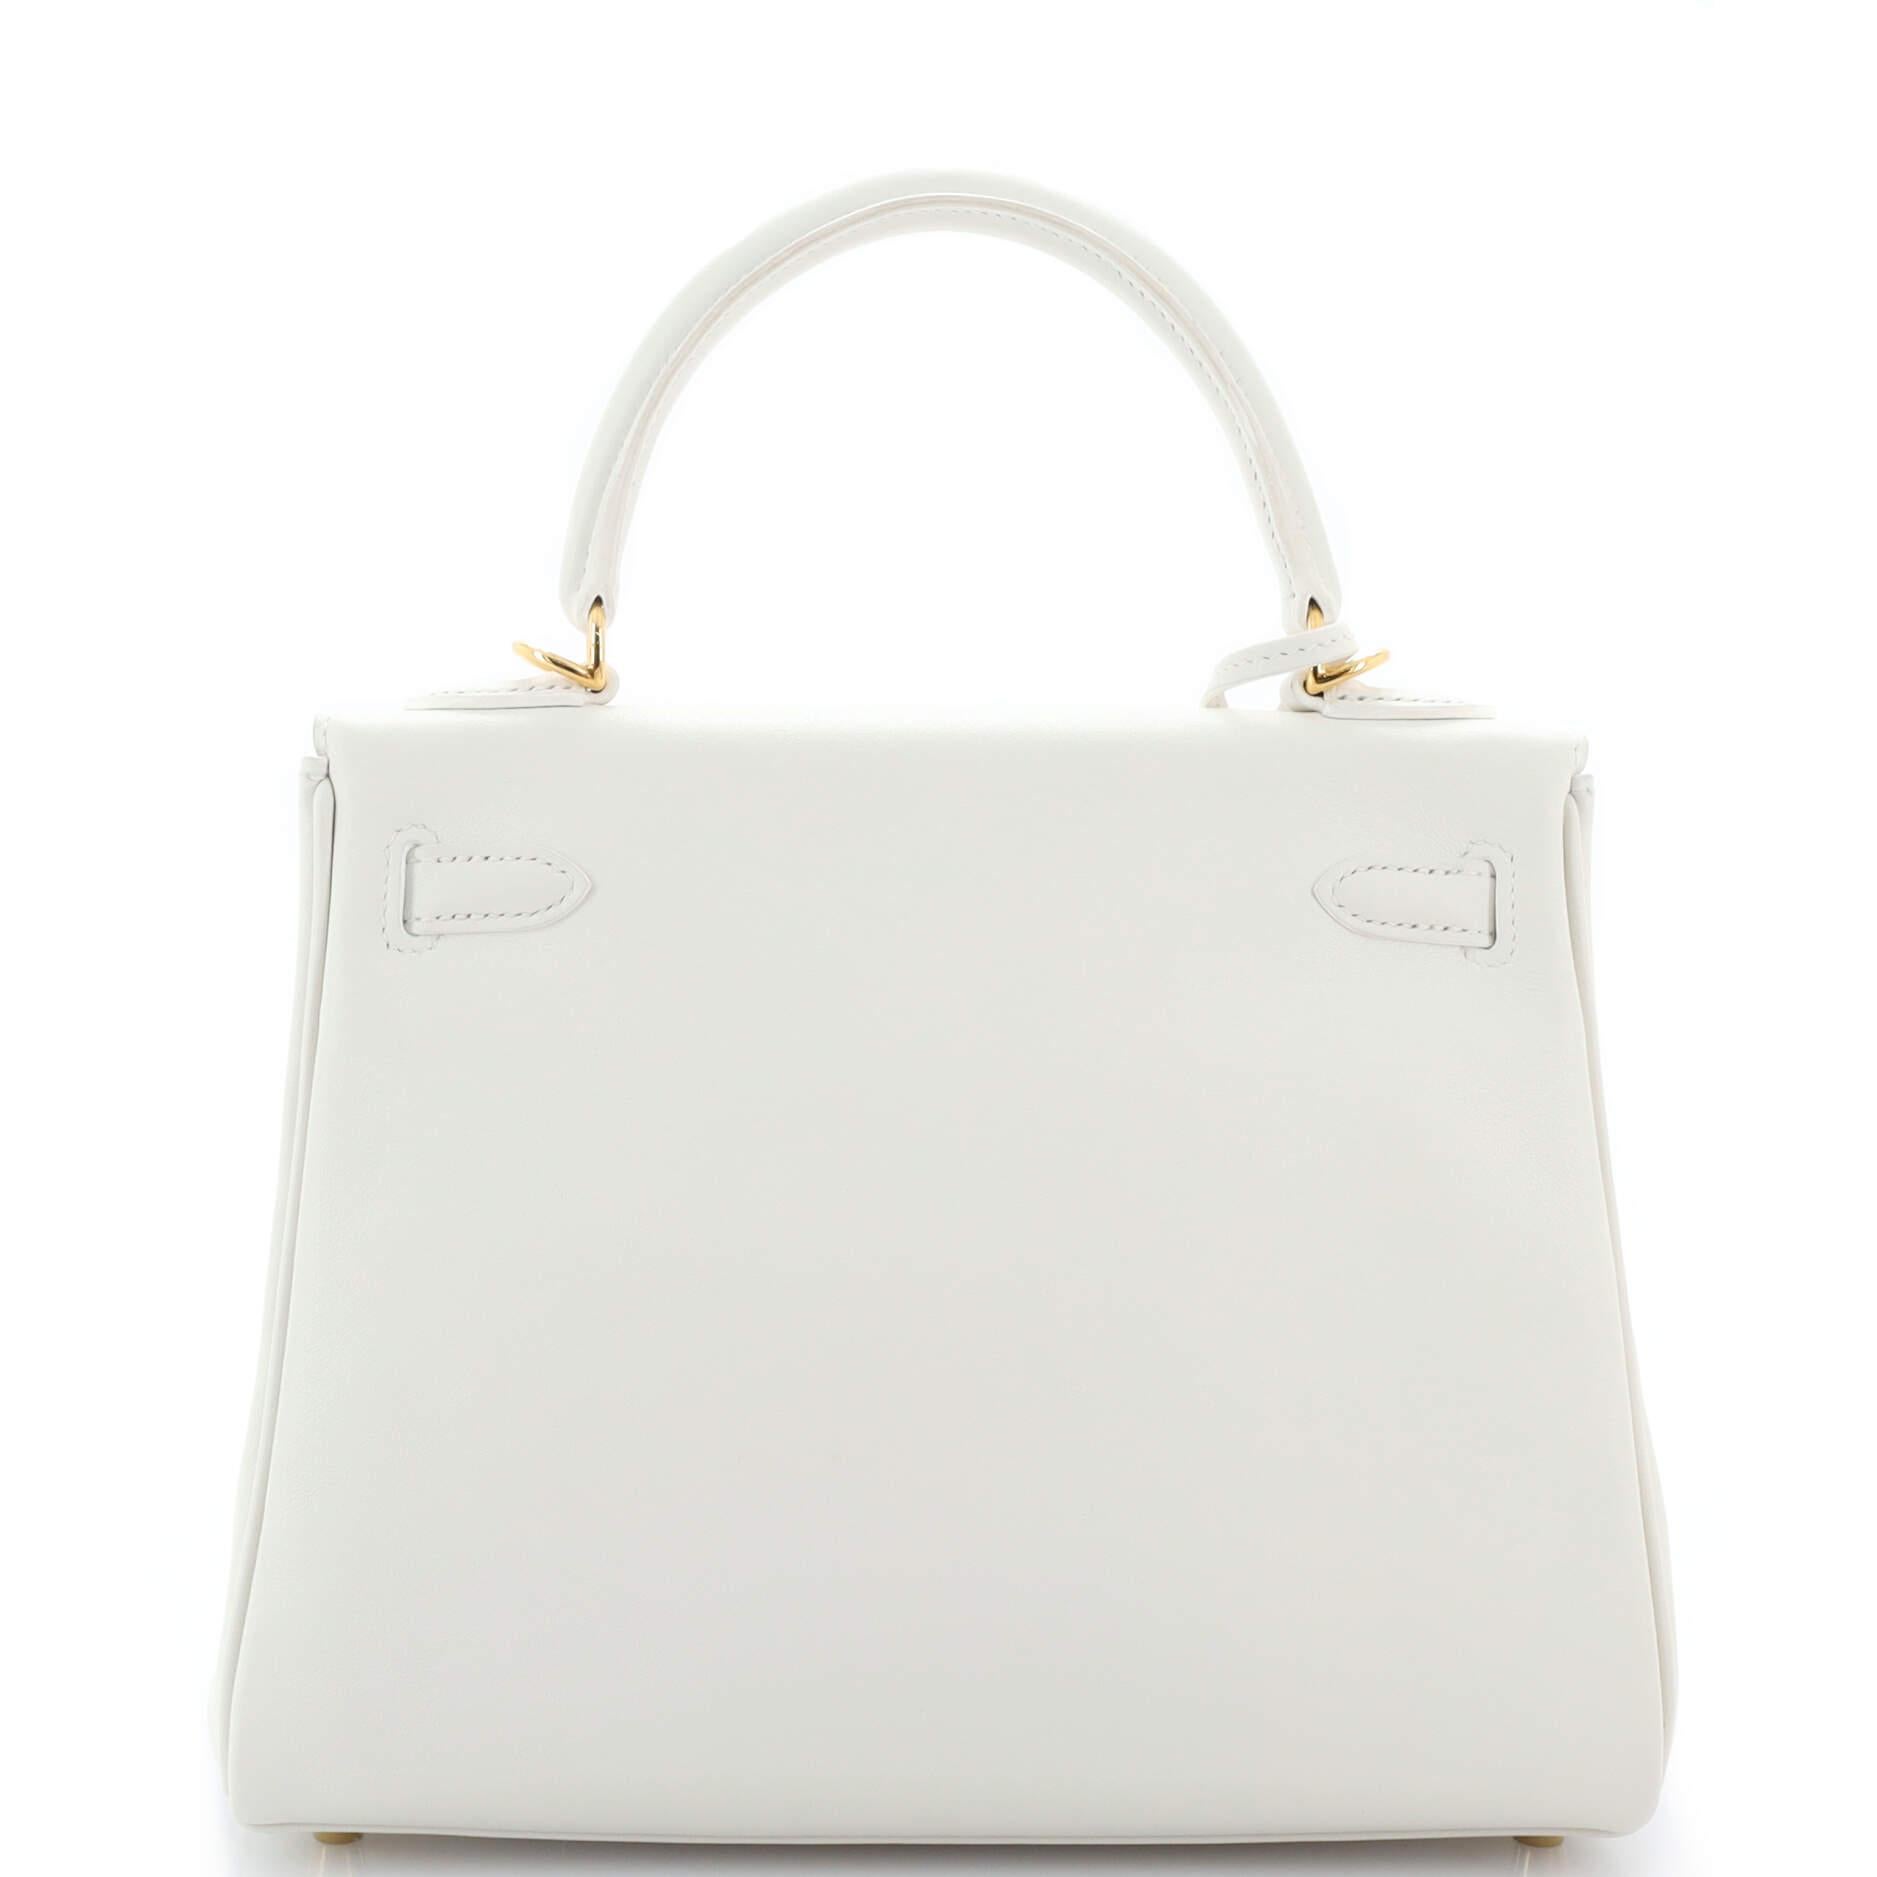 Women's or Men's Hermes Kelly Handbag Blanc Swift with Gold Hardware 25